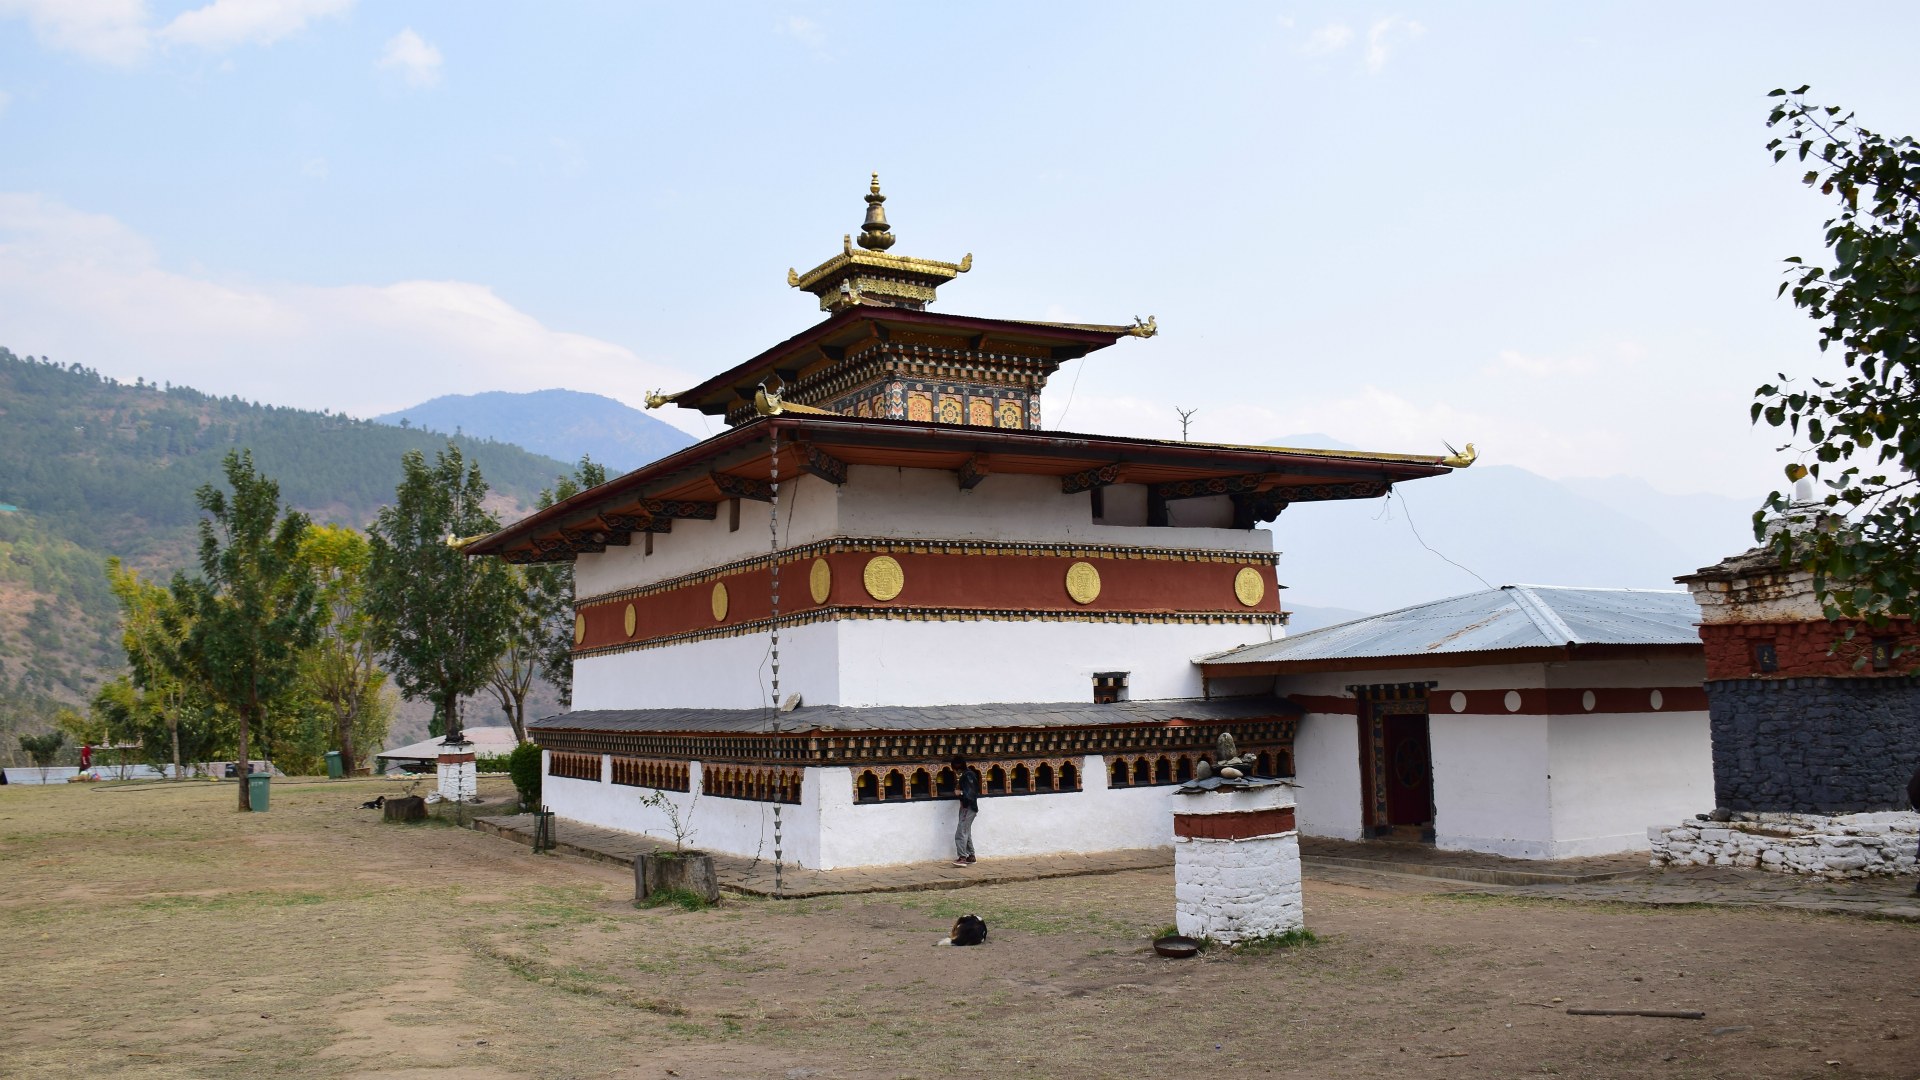 Chime Lakhang Monastery, Teoprongchu